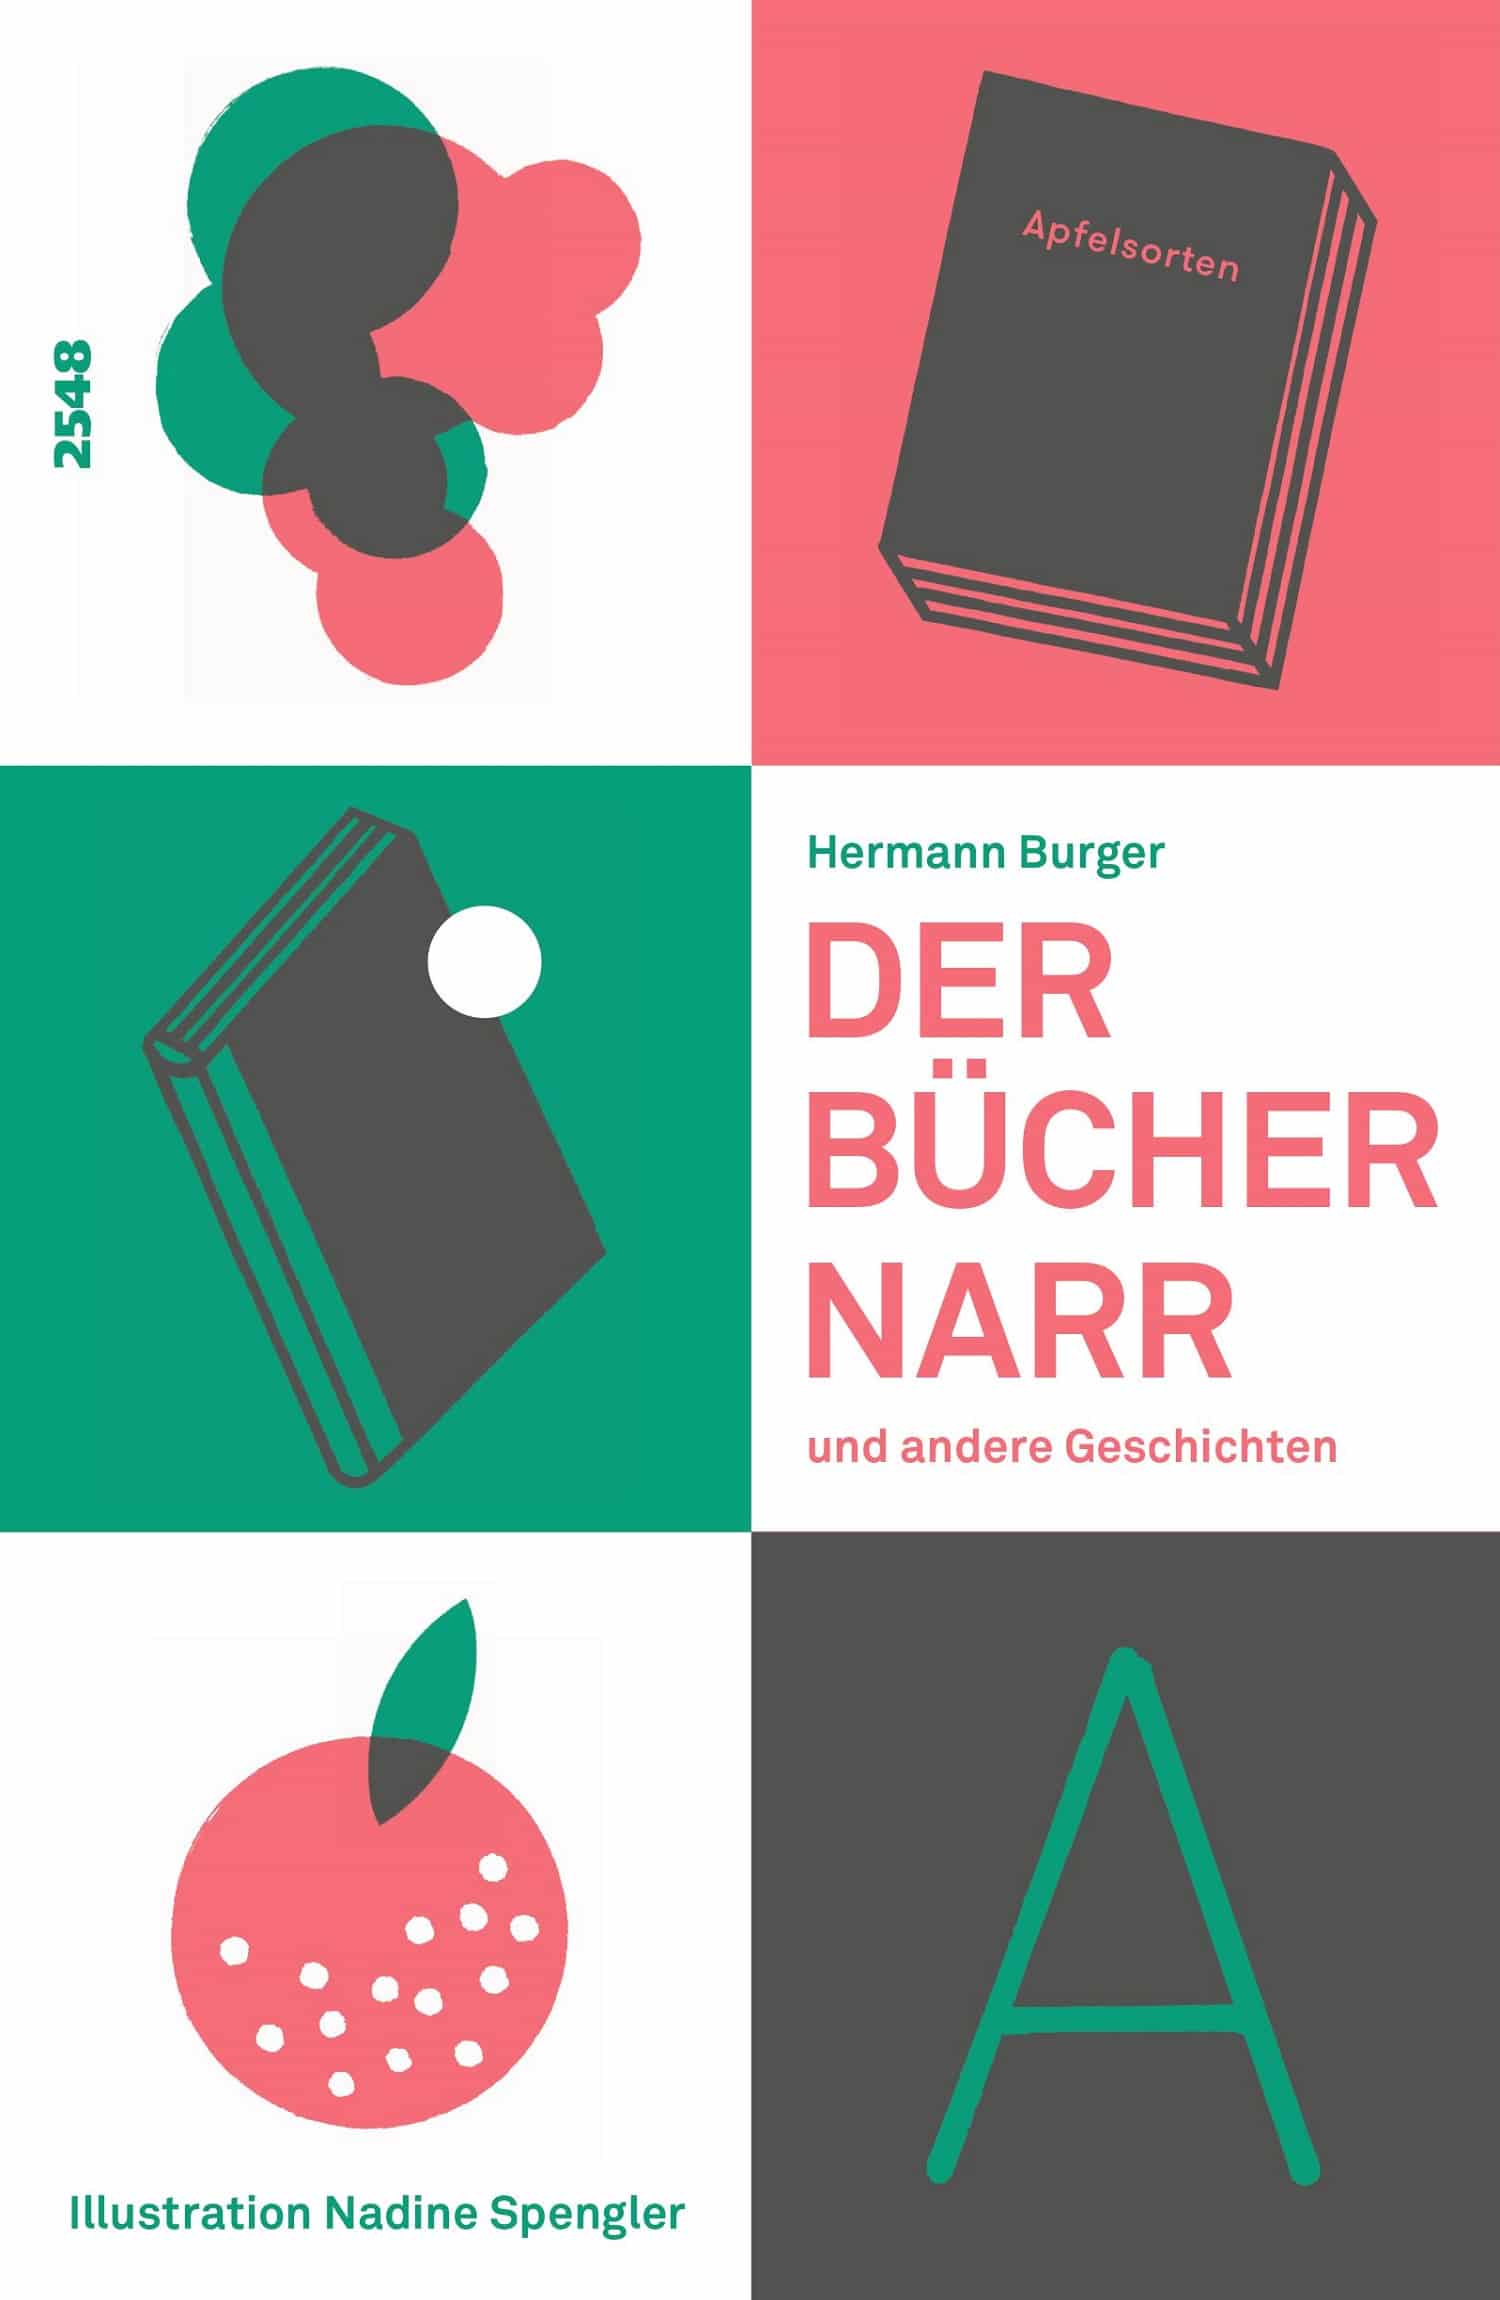 Der Buechernarr und andere Geschichten, ein Buch von Hermann Burger, Illustration Nadine Spengler, SJW, Schweizer Literatur